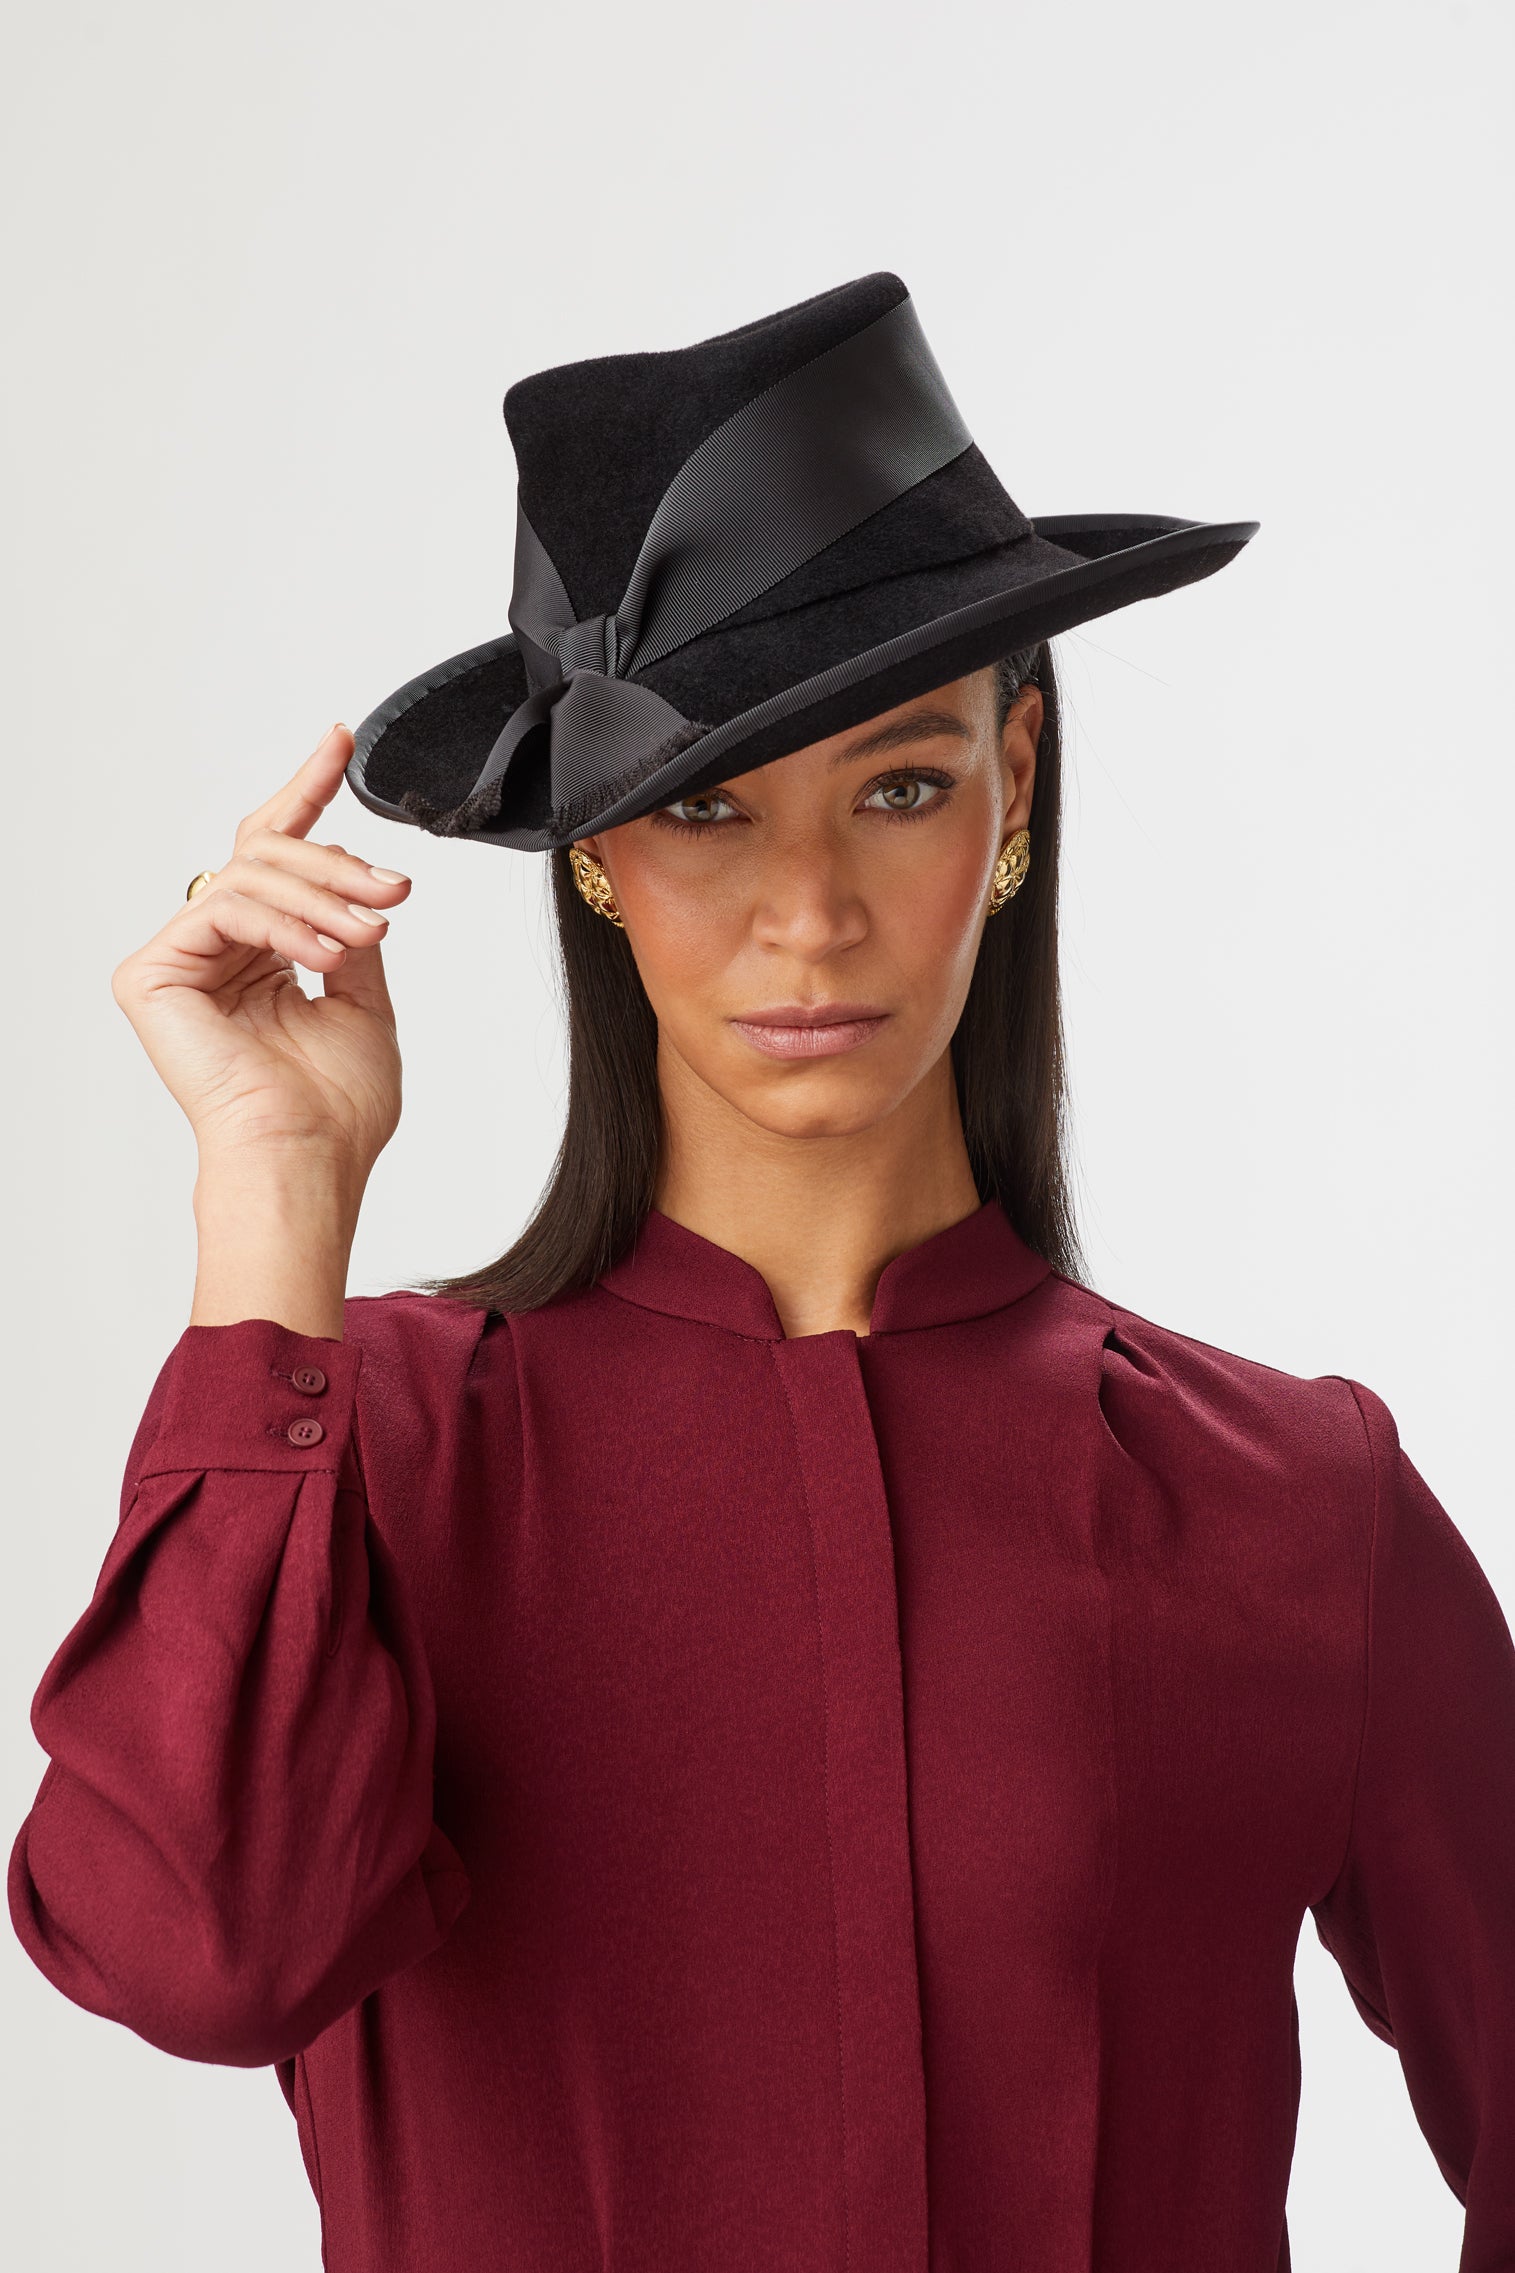 Women's Hats - Elegant Hat Styles for Women - Lock & Co. Tagged